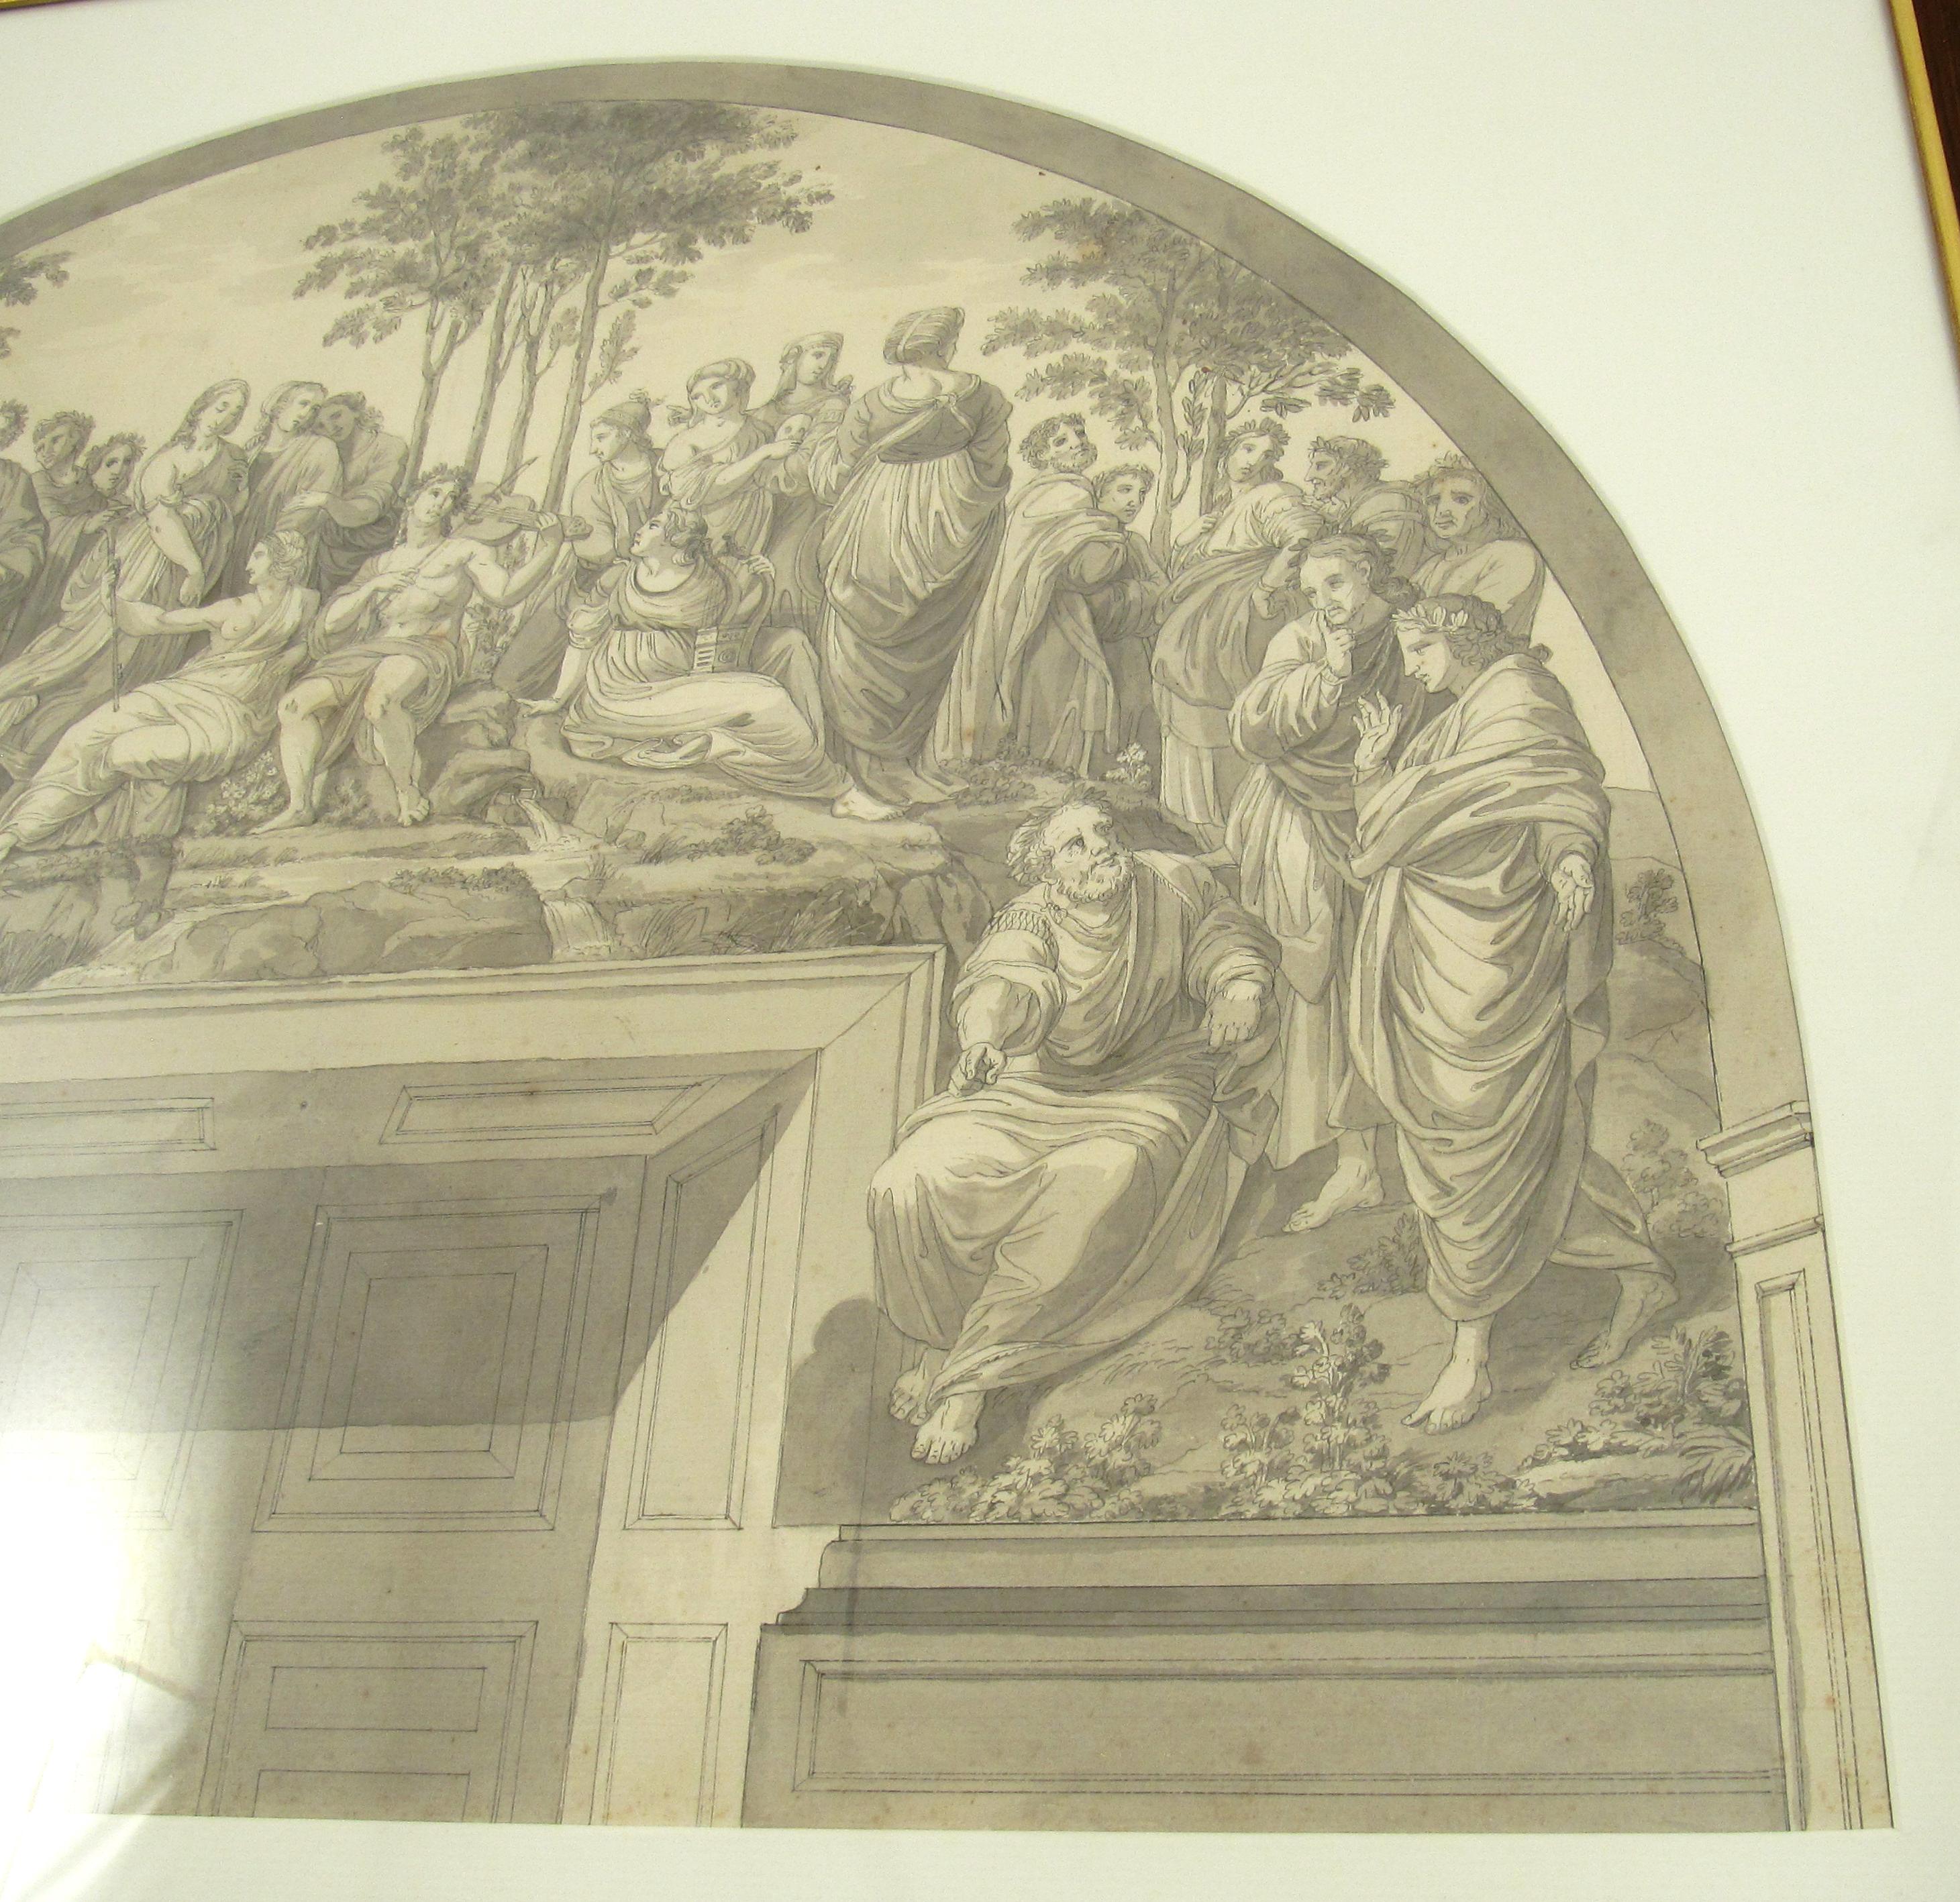 Der Parnass nach Raphael

18. Jahrhundert
Feder und Tusche Lavierung Zeichnung
Rahmen aus glasiertem Holz, ca. 62 x 78,5 cm
Montiert hinter einer gewölbten Matte.

Diese große Zeichnung ist nach dem berühmten Fresko der Schule von Athen, das Raffael